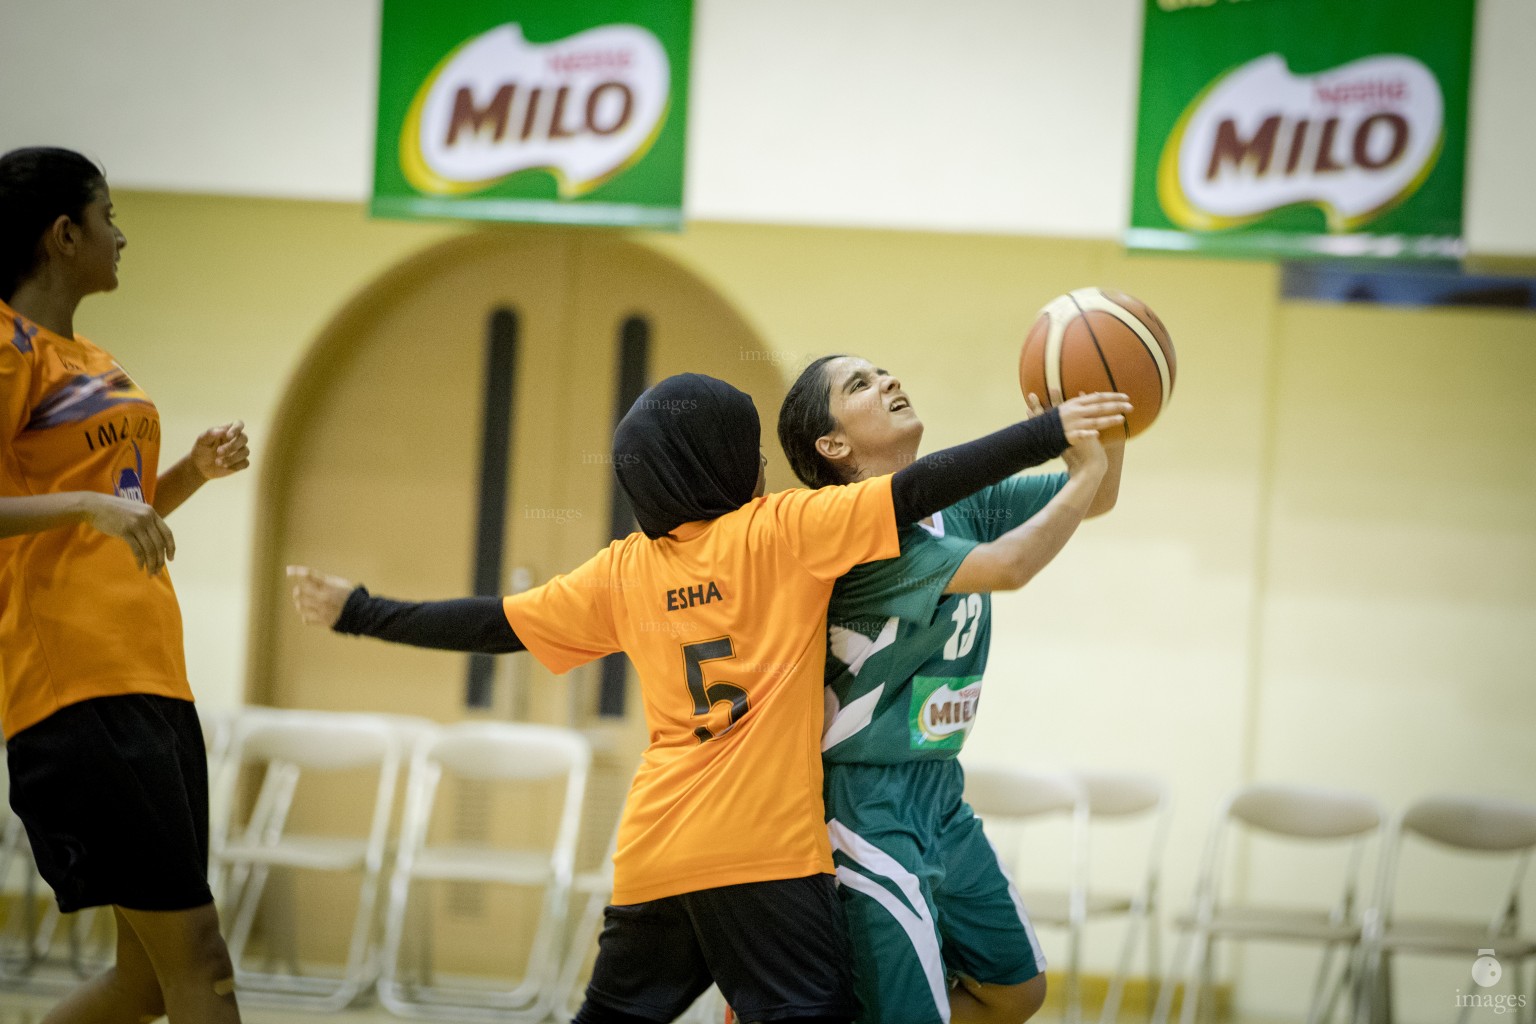 MILO Interschool Basket Tournament 2018 (10th April 2018)